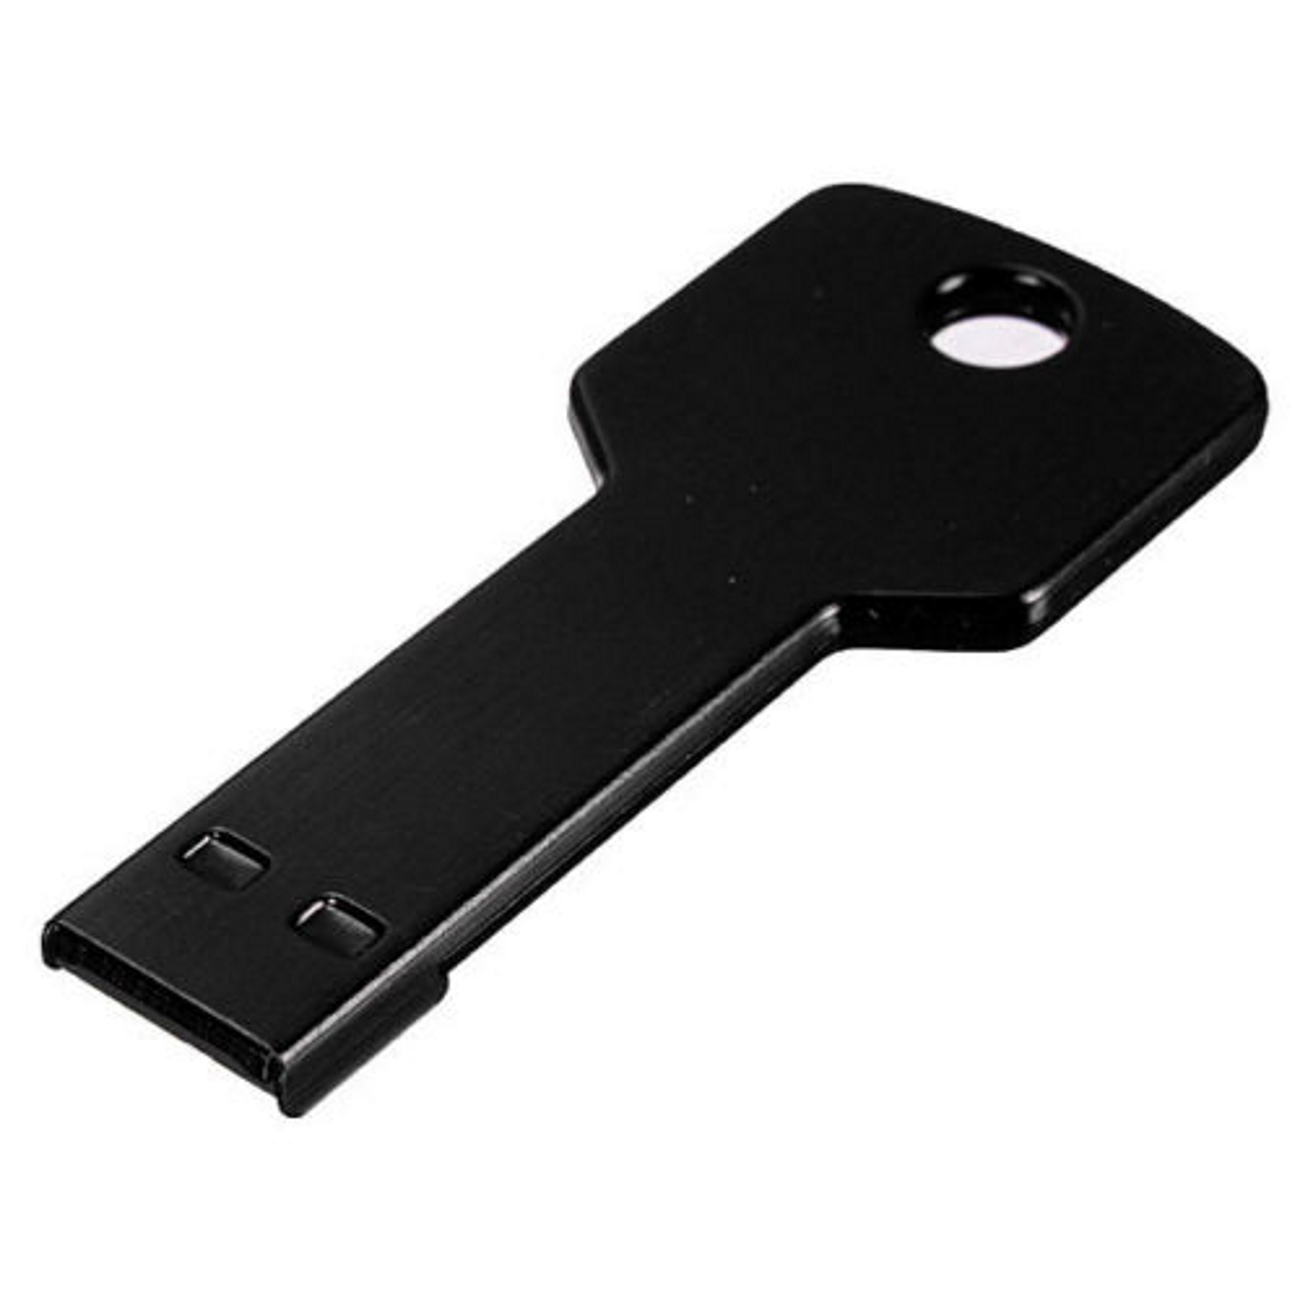 USB GERMANY Key Schwarz GB) 4GB (Schwarz, USB-Stick 4